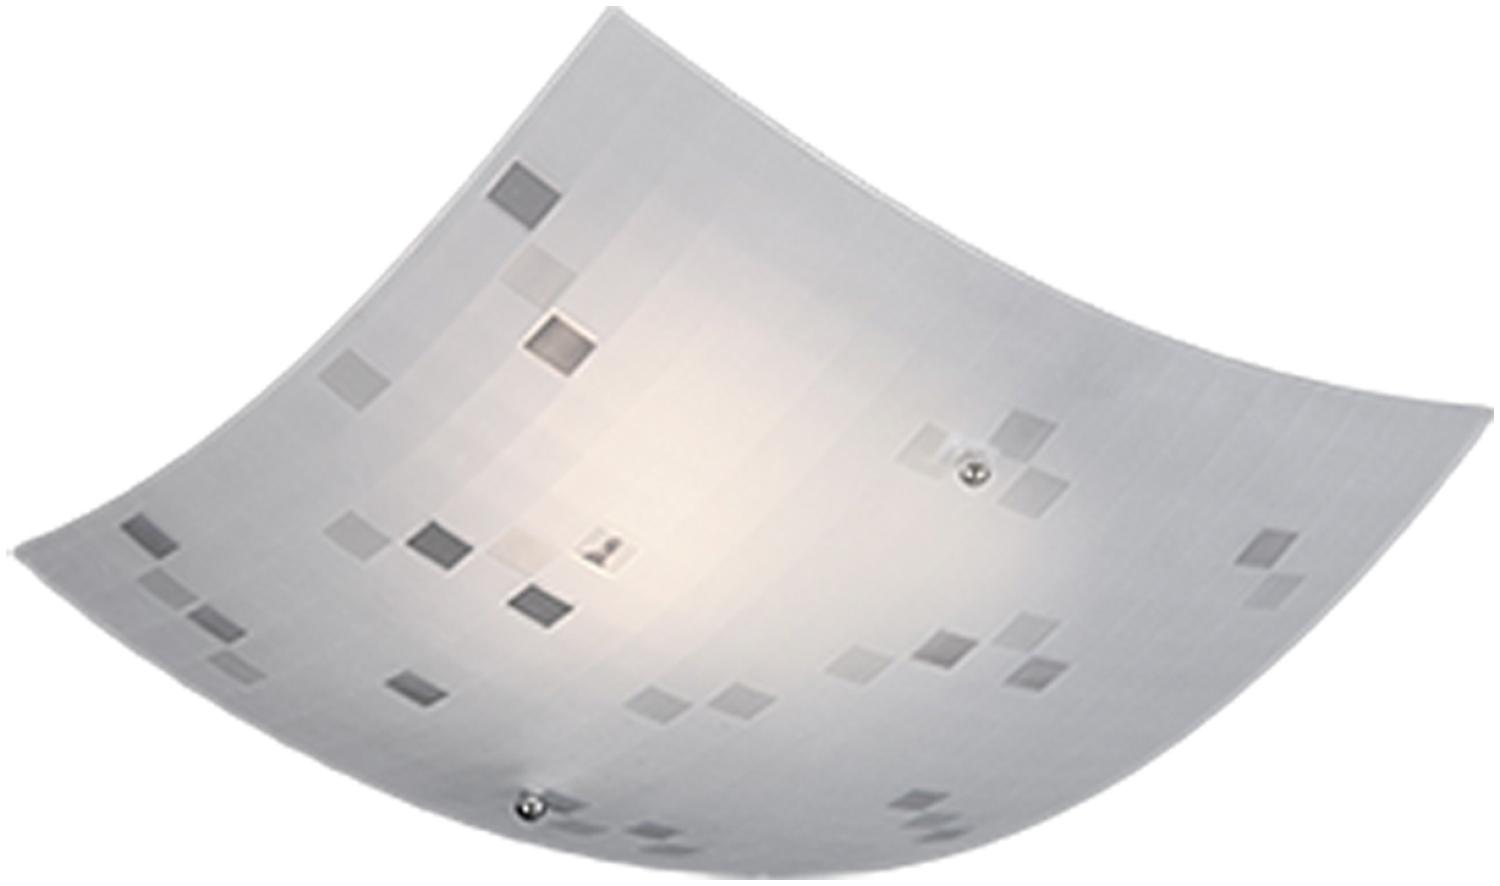 Eckige LED Deckenschale 40x40cm, Glaslampenschirm in weiß grau gemustert Bild 1